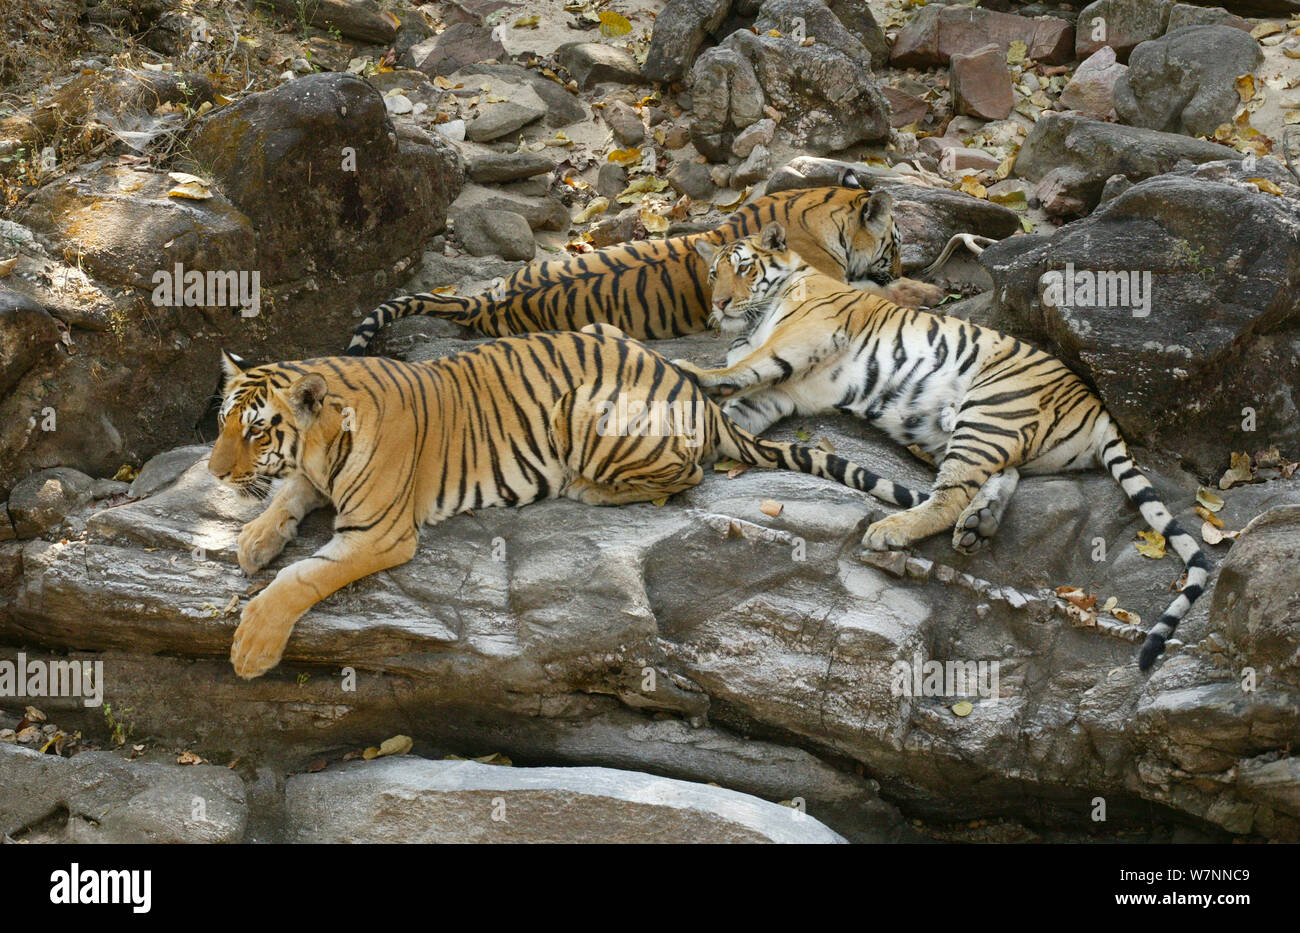 Le tigri del Bengala (Panthera tigris tigris) poggianti su grossi massi, Pench National Park, Madhya Pradesh, India, presa sulla posizione per 'Tiger - Spy nella giungla' Febbraio 2007 Foto Stock